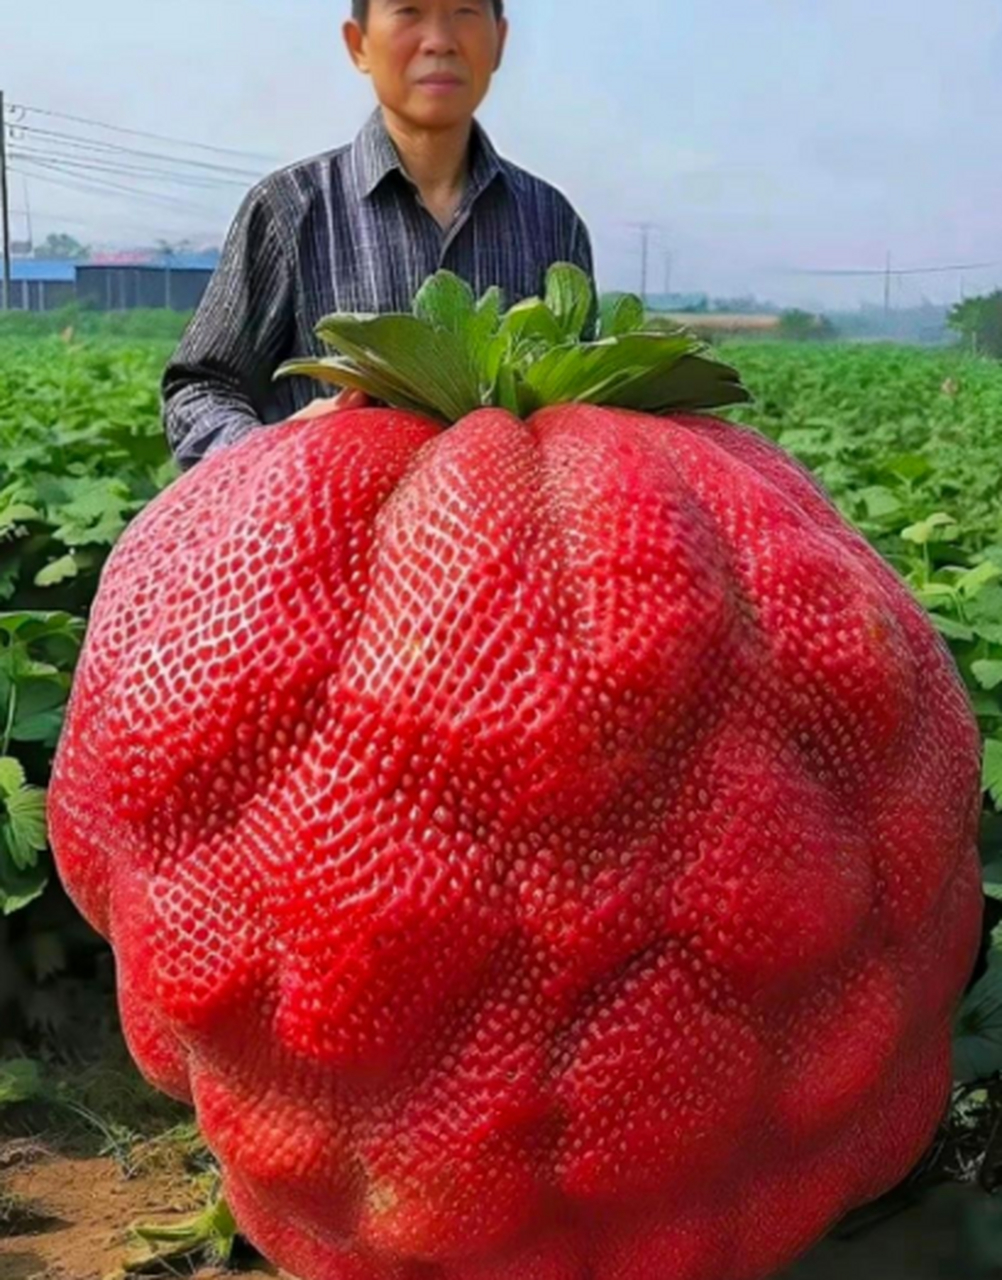 能种出这么大的草莓,一定没少施肥吧,这巨型草莓[赞同]